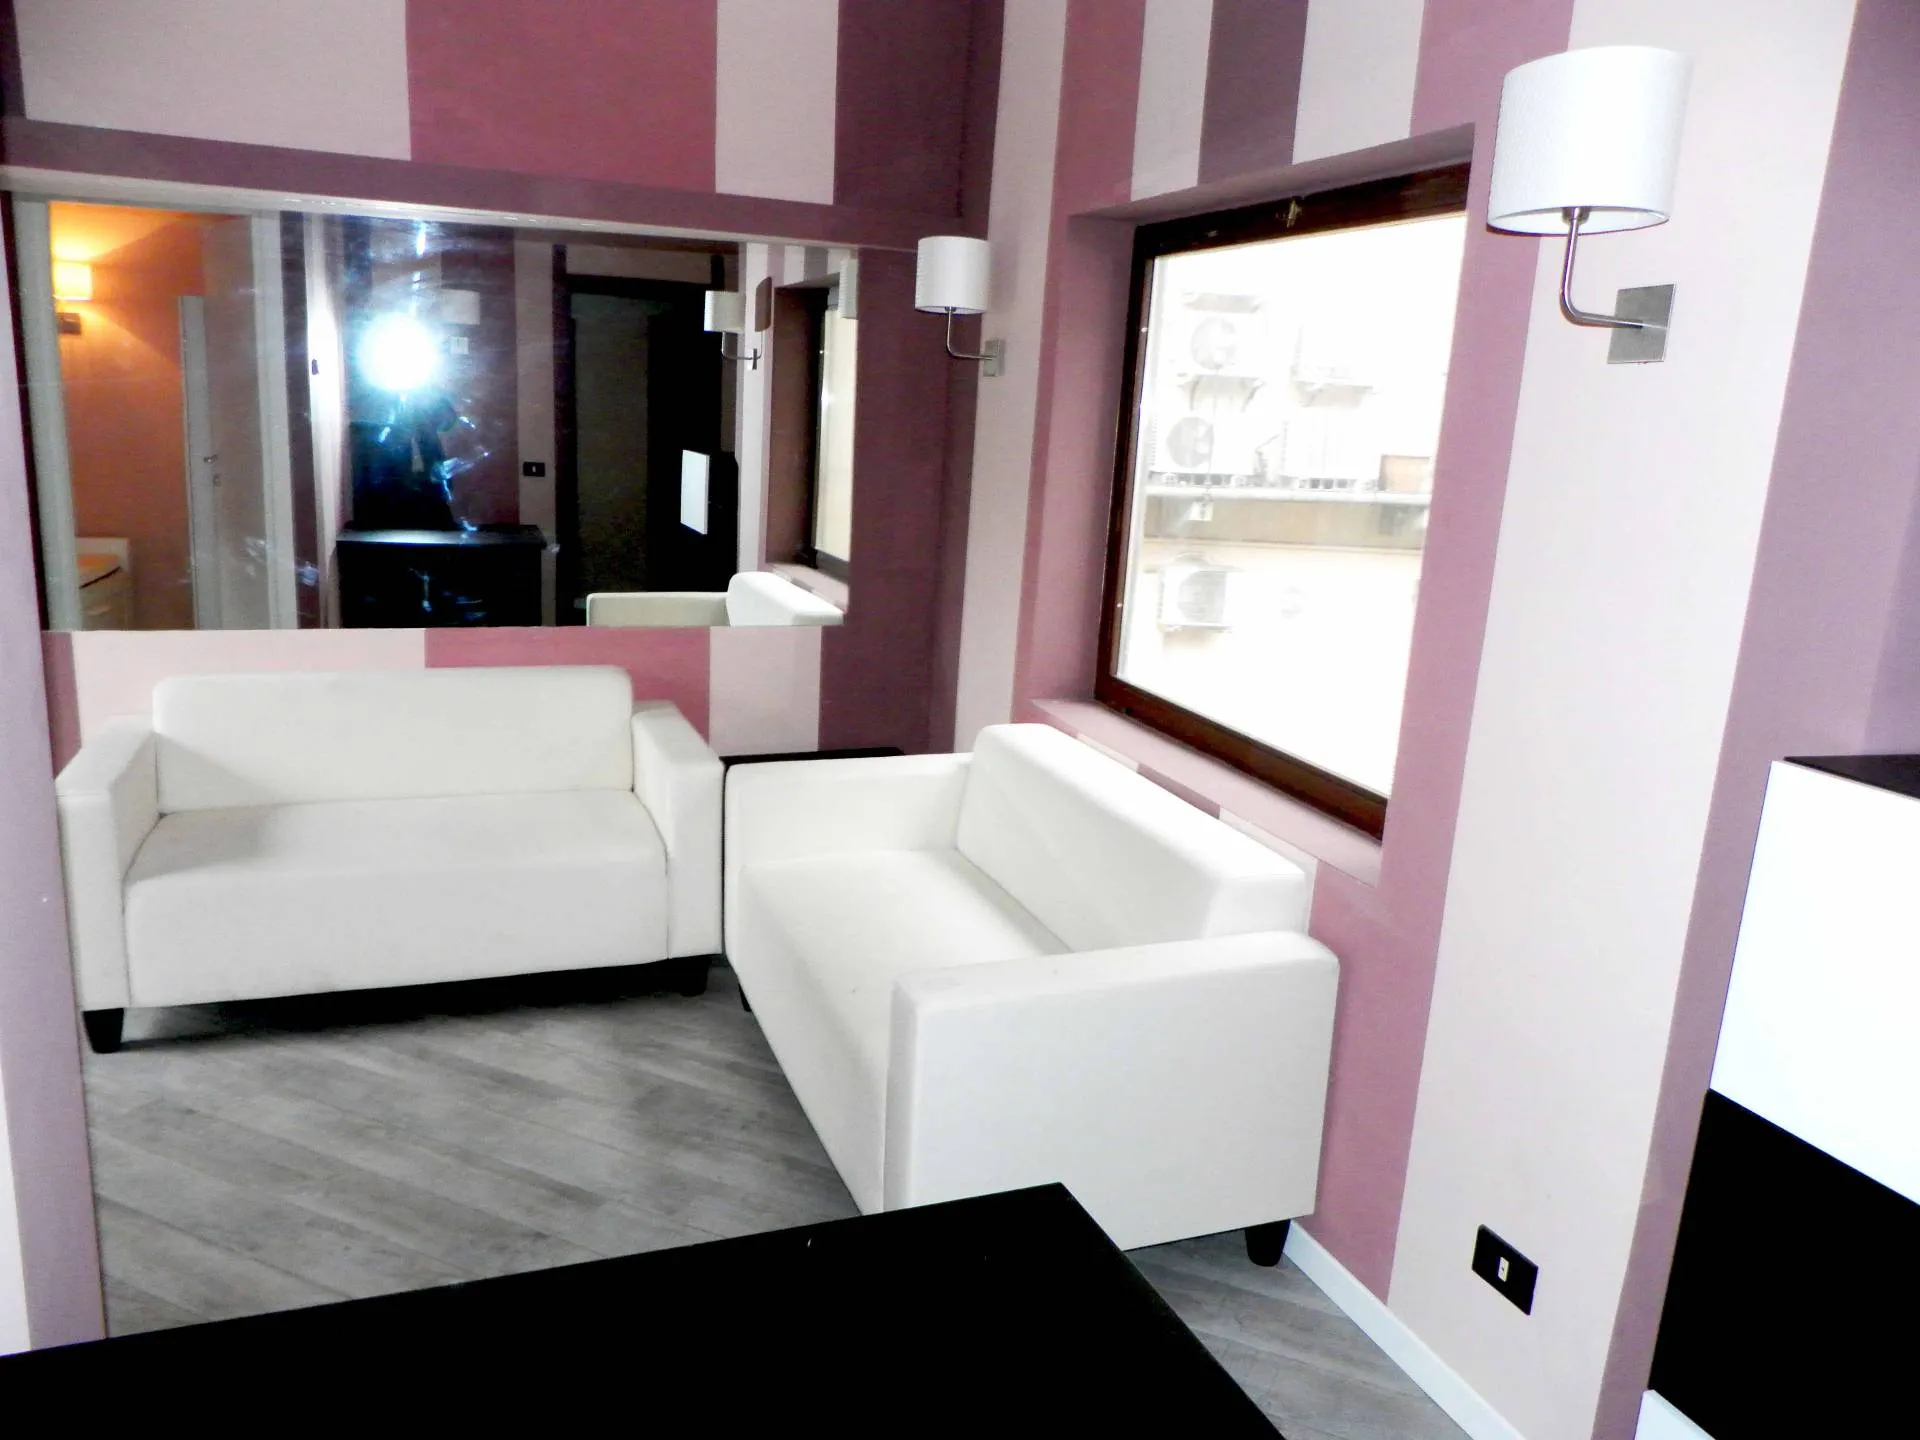 Immagine per Appartamento in affitto a Milano Via Marghera